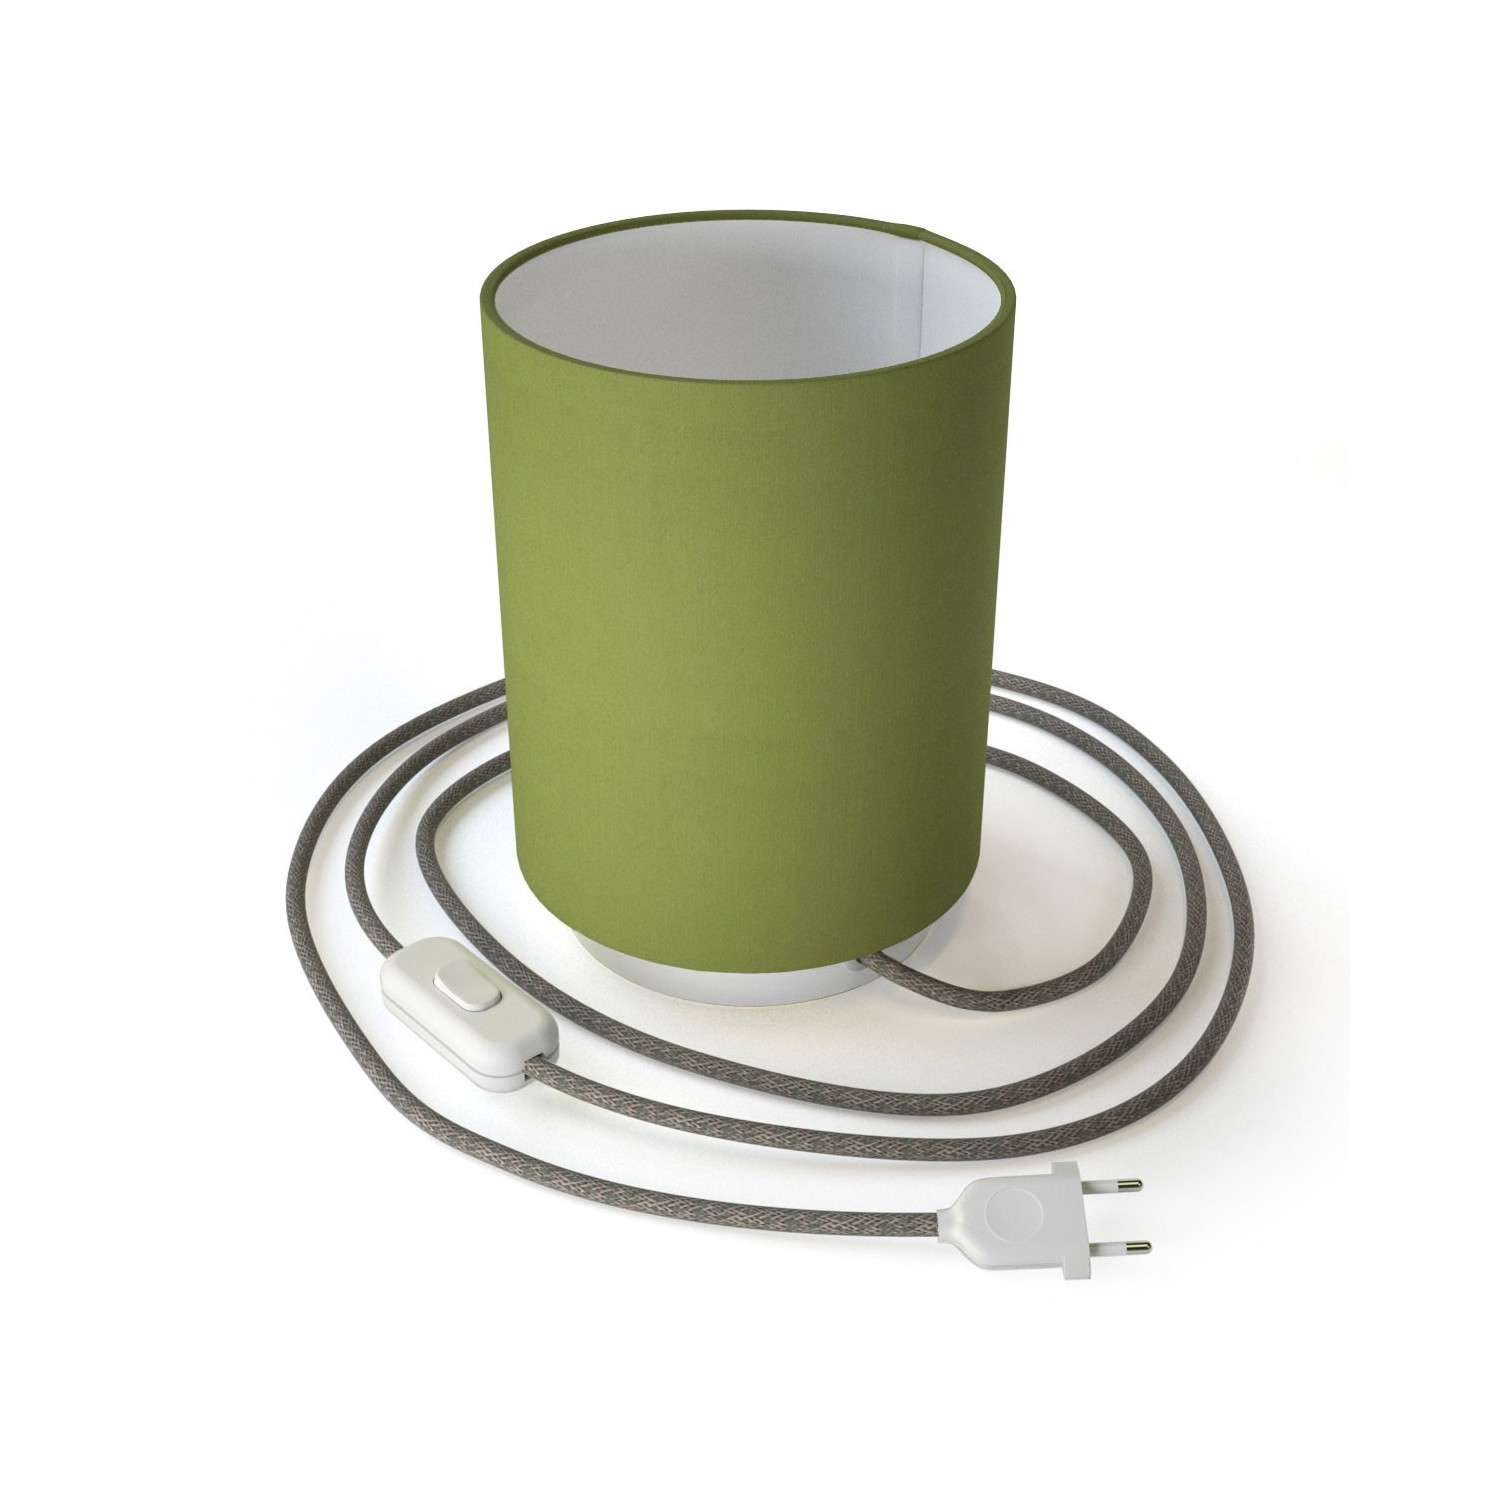 Posaluce Metal met Cilindro lampenkap van olijfgroen canvas, inclusief lichtbron, textielkabel, schakelaar en 2-polige stekker